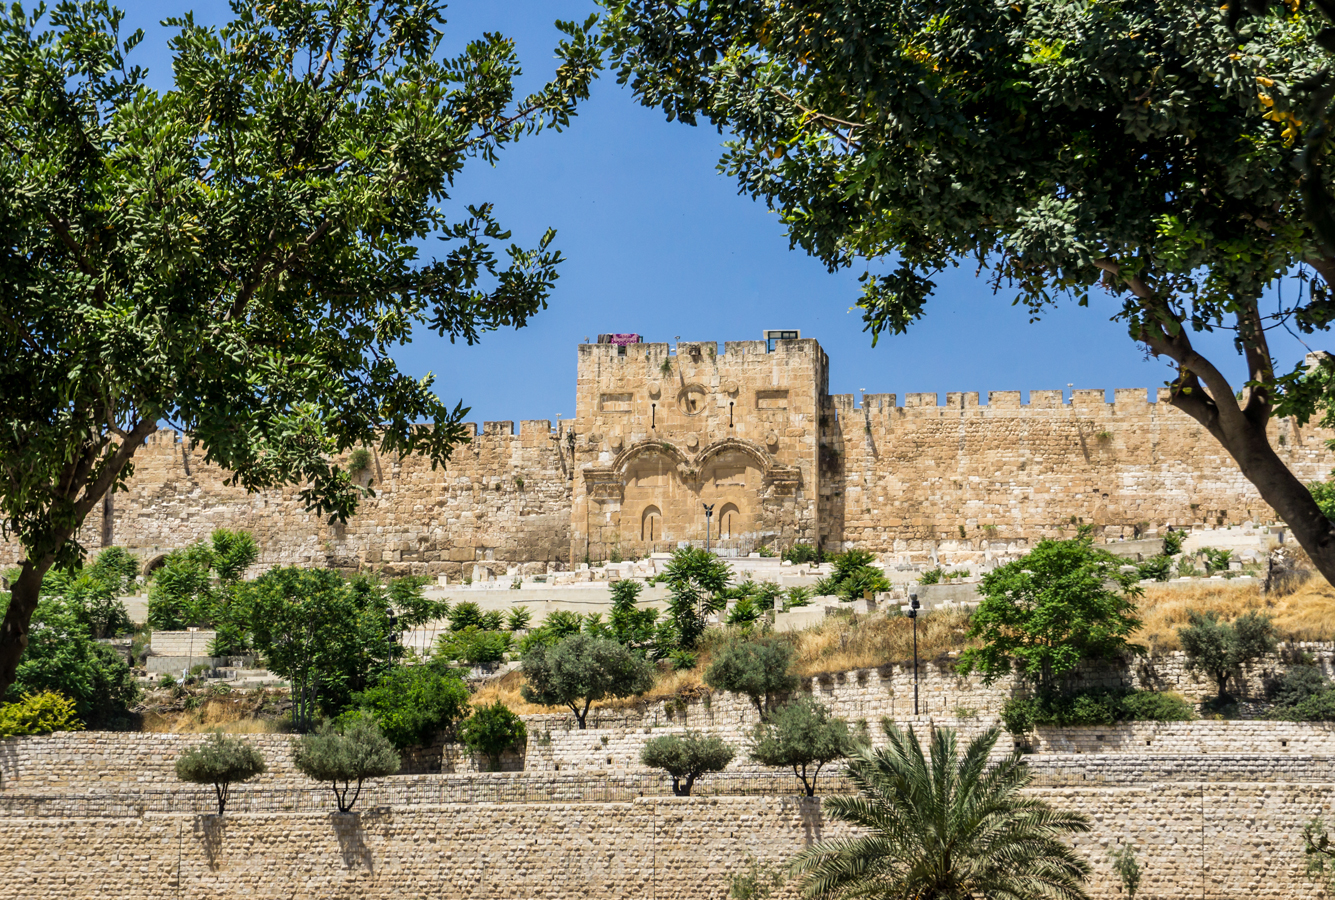 Jeruzalémské hradby - Zlatá brána, kterou má podle tradice vstoupit Mesiáš